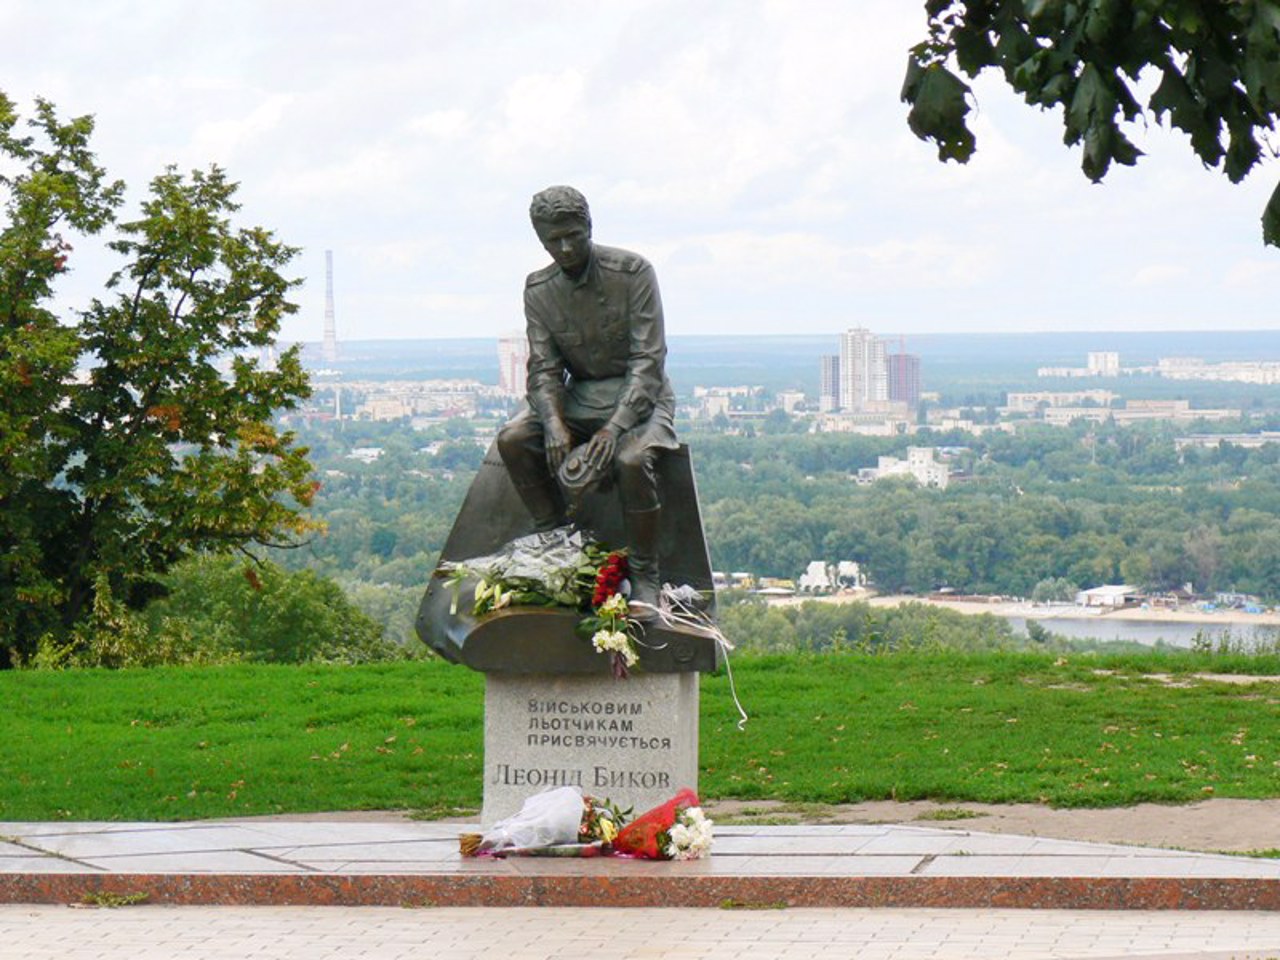 Leonid Bykov Monument, Kyiv